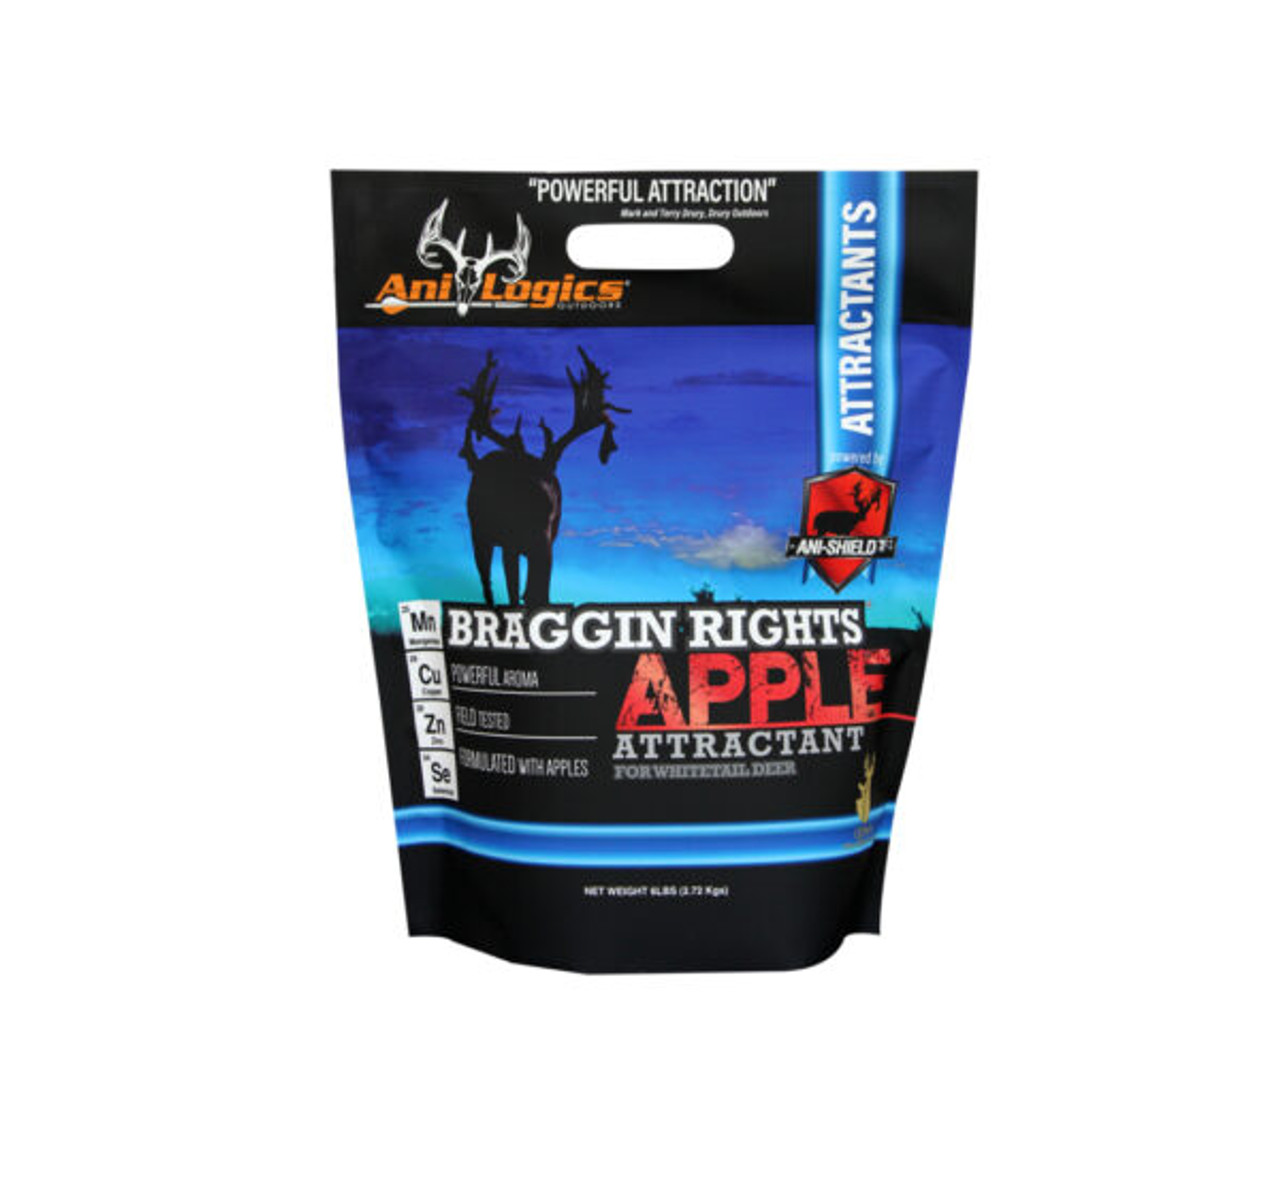 ALO Braggin Rights Apple Attractant, 6 lbs